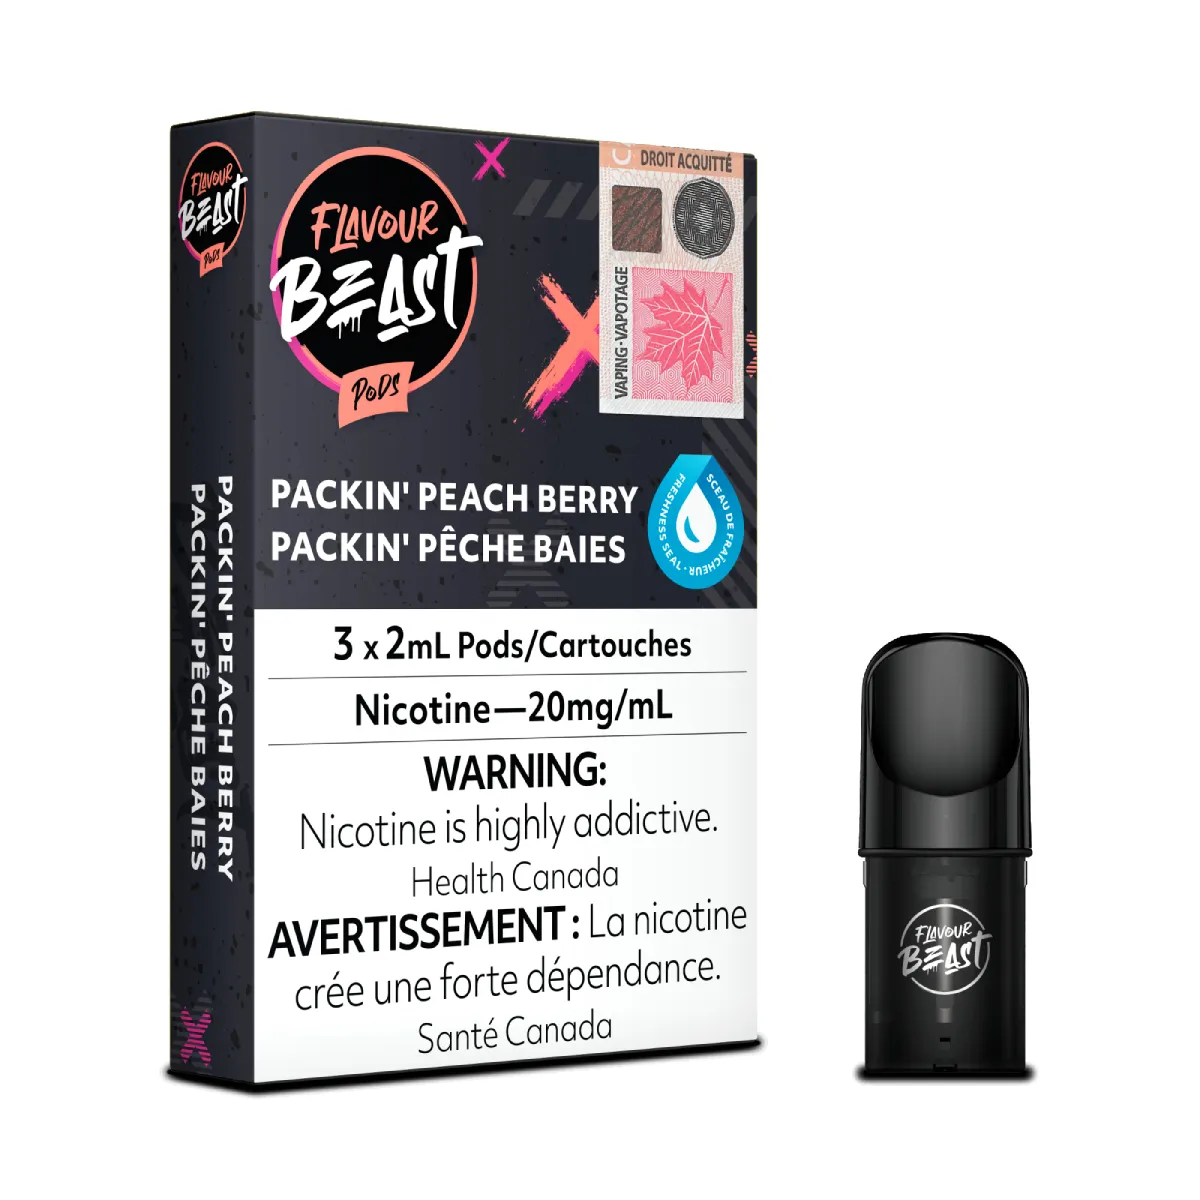 Flavour Beast Pods - Pop'n Peach Berry (3x2mL) (6757136564279)